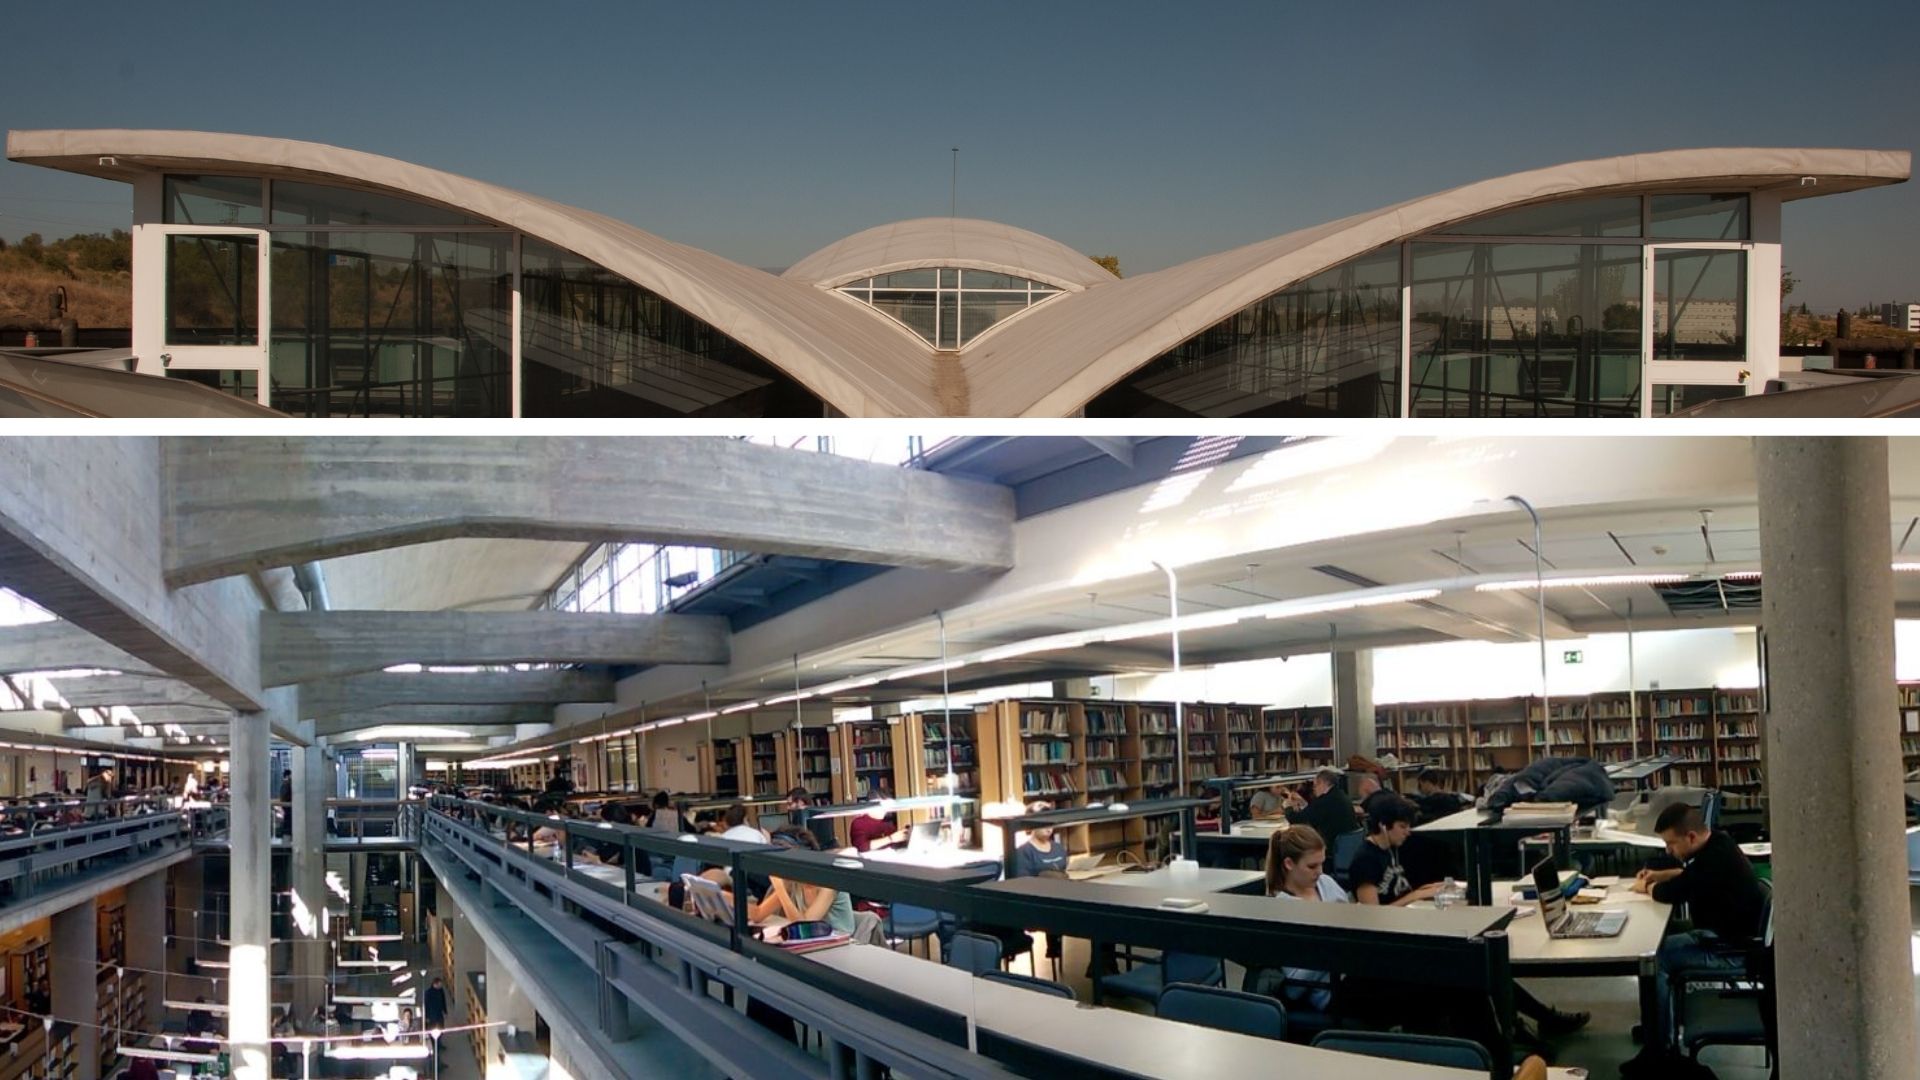 Imagen del exterior (techado) e interior (salas de lectura) de la Biblioteca de Humanidades